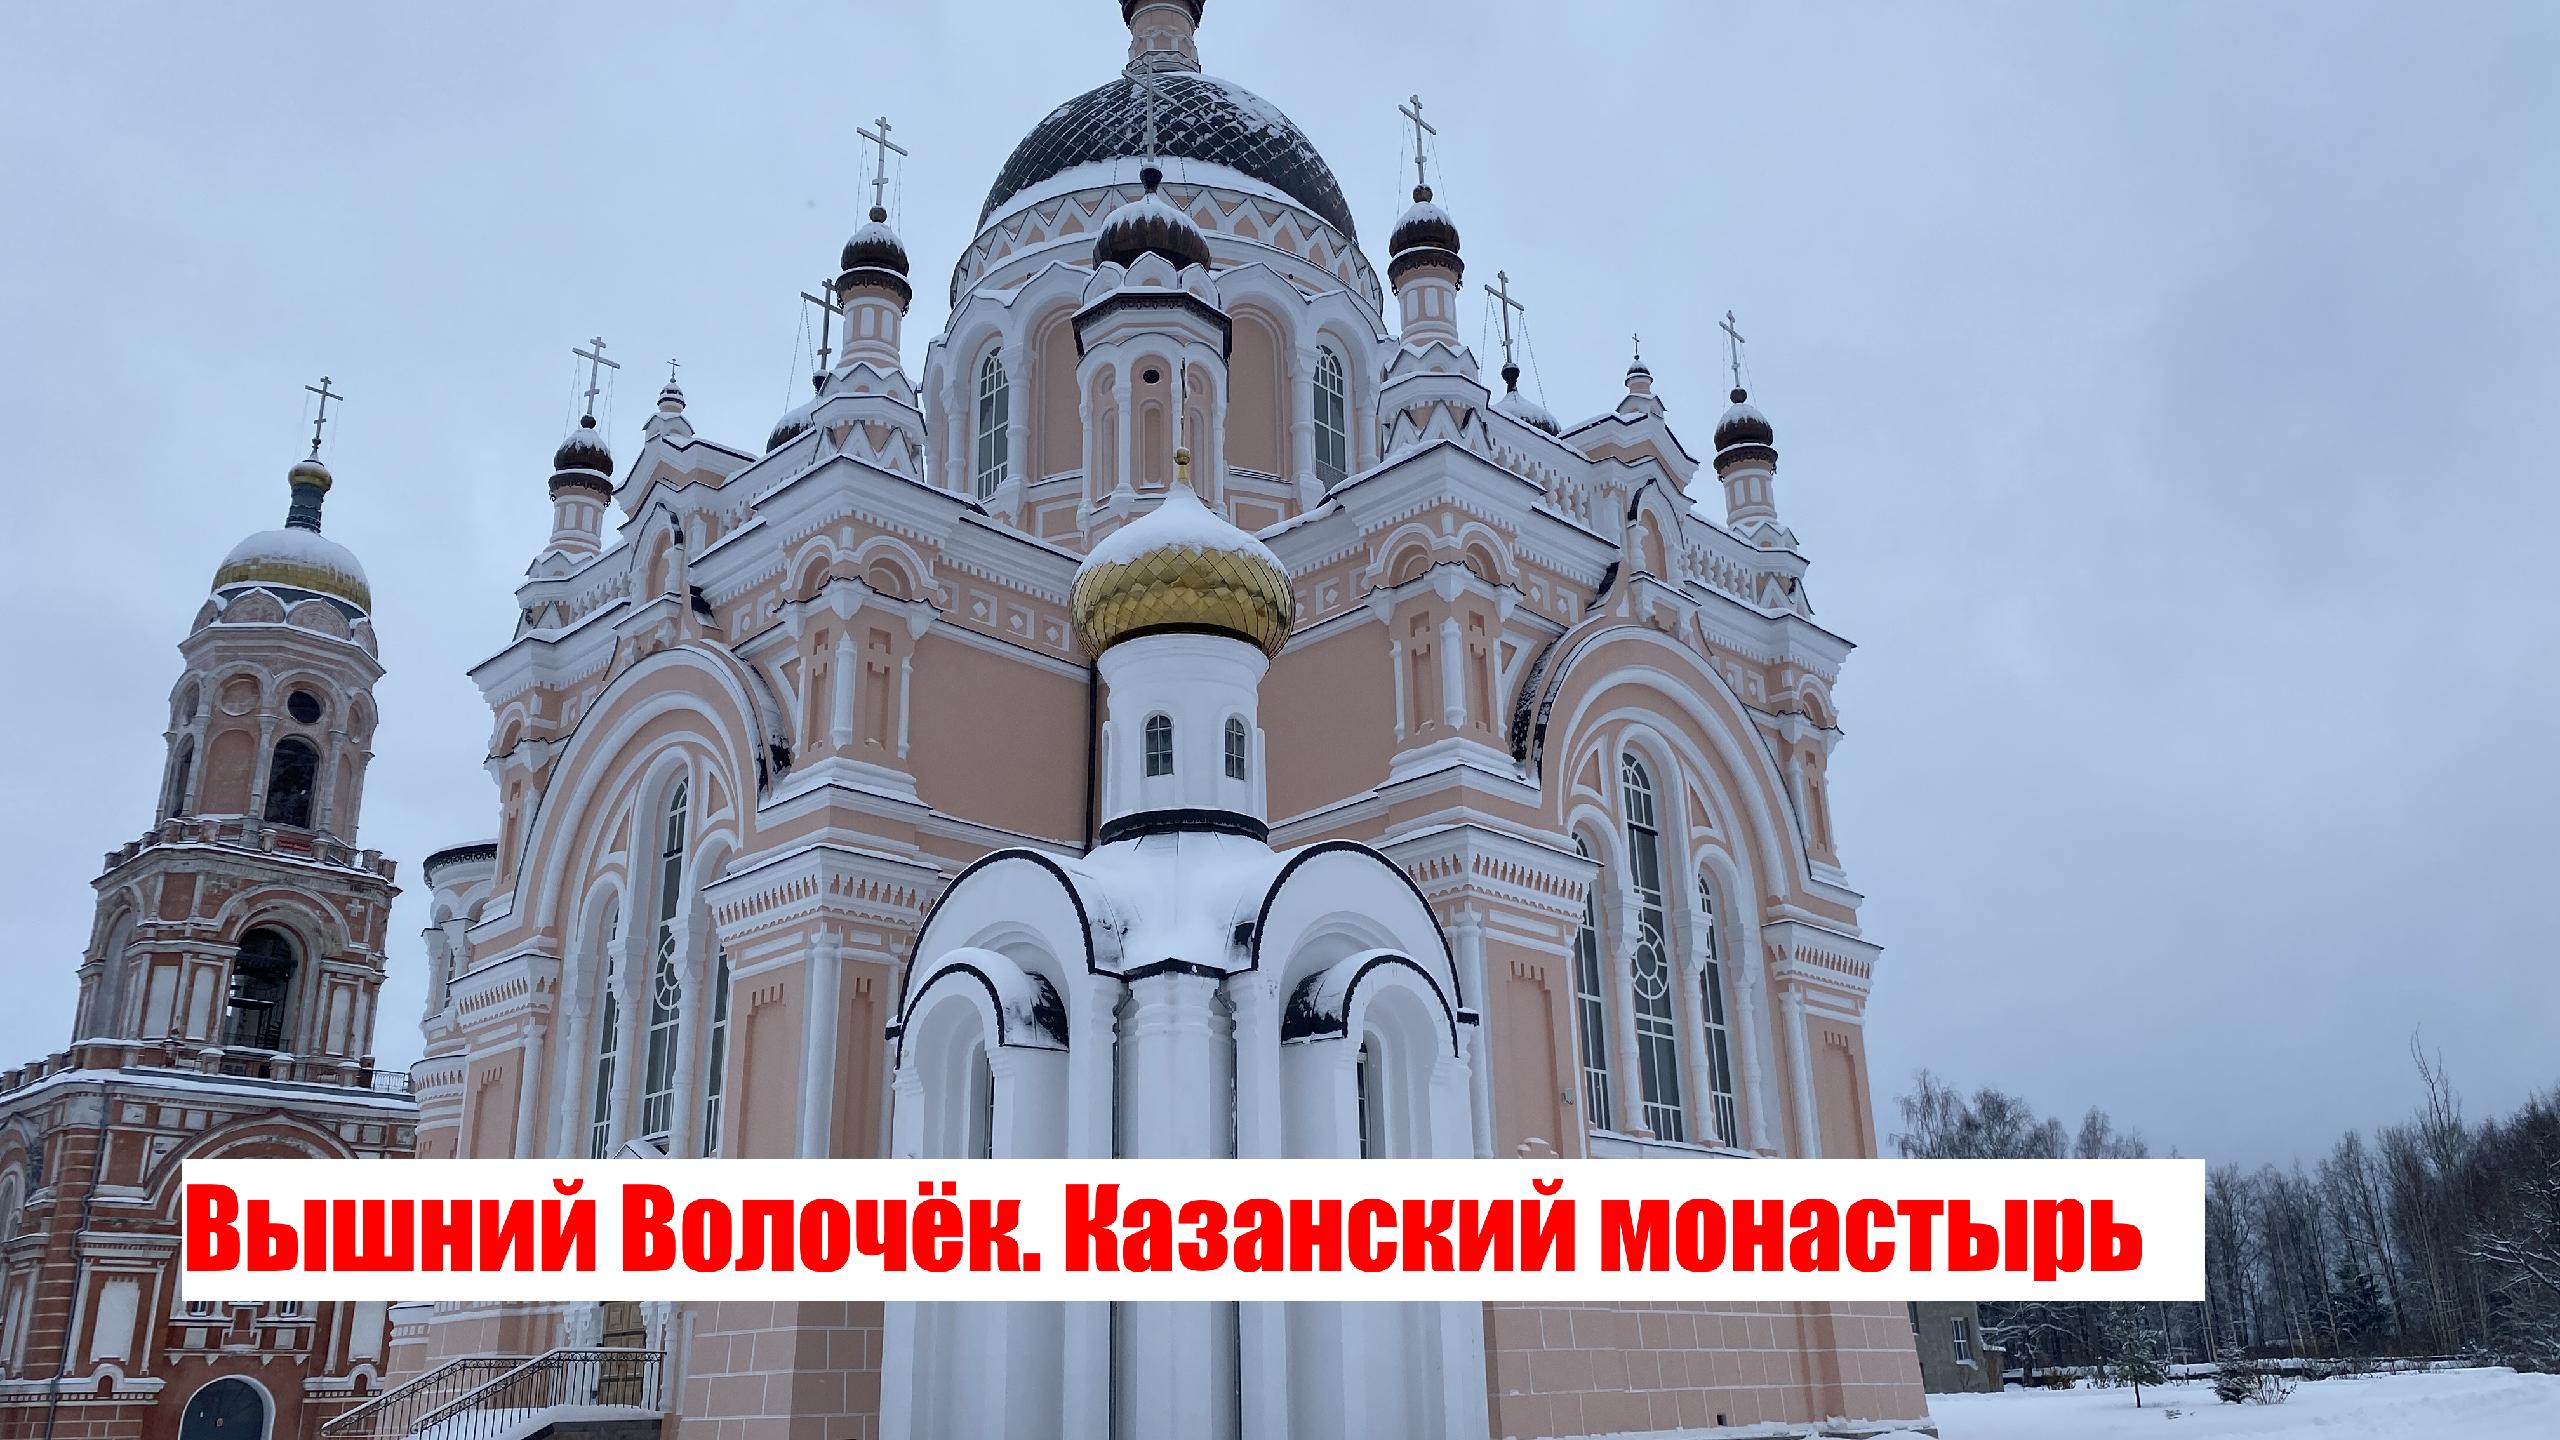 II. Вышний Волочёк / Казанский монастырь / Идем к центру города